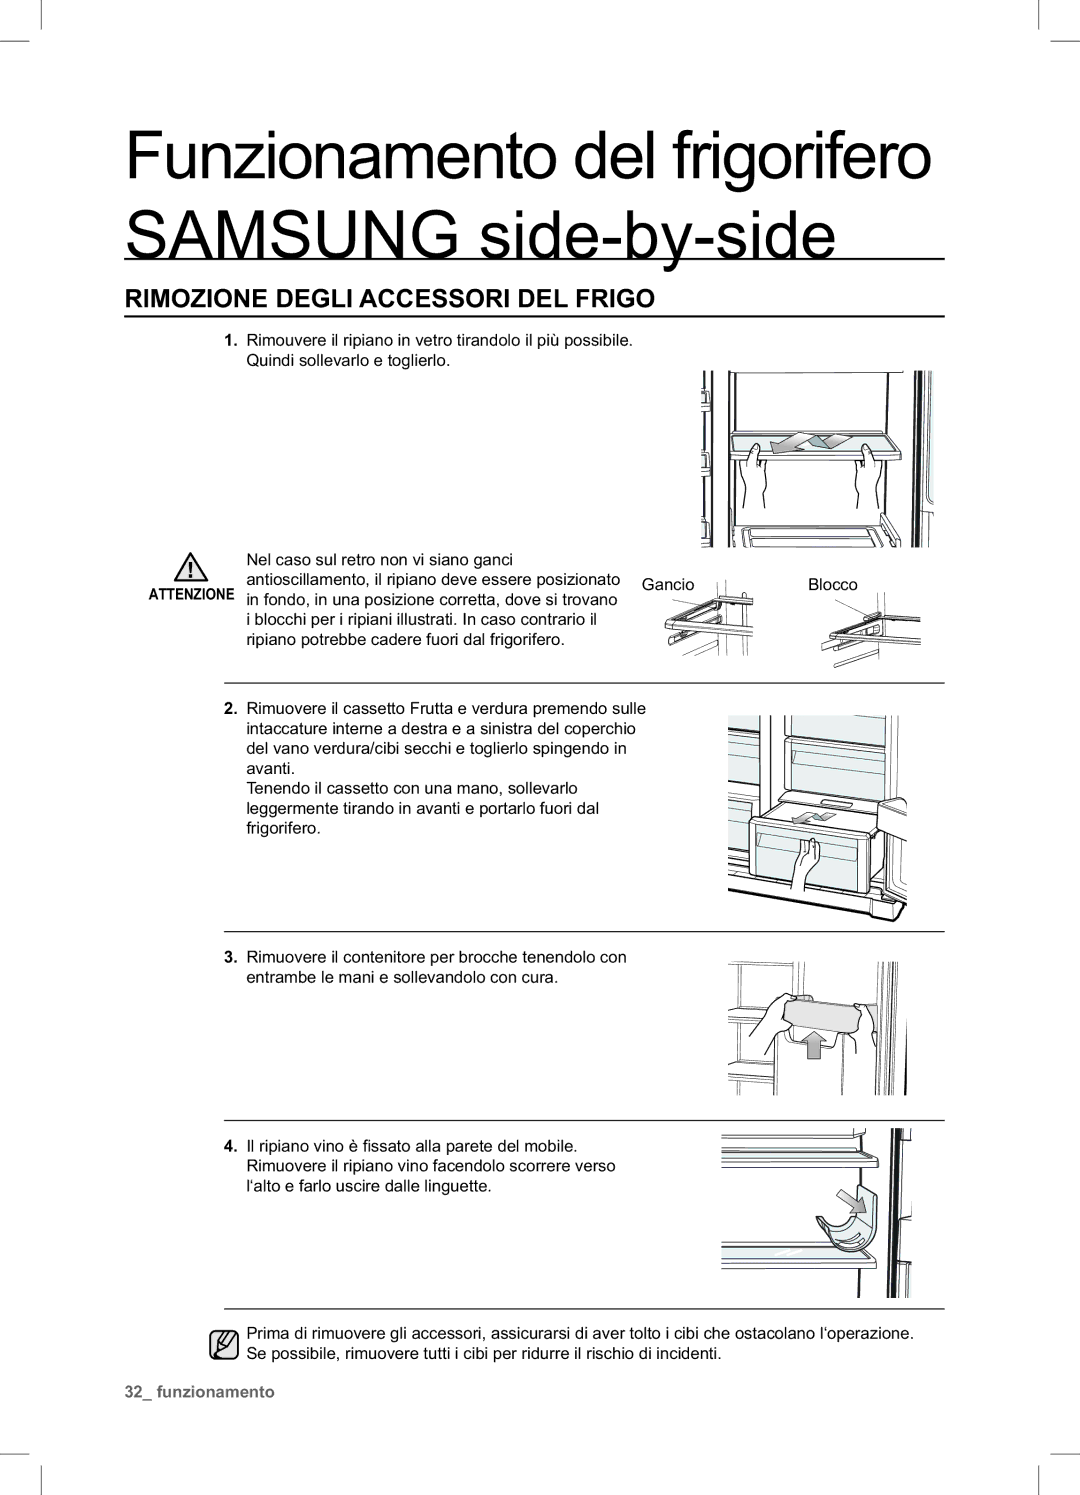 Samsung RSA1STTS1/XES, RSA1ZTTS1/XES, RSA1UTTS1/XES manual Rimozione Degli Accessori DEL Frigo 